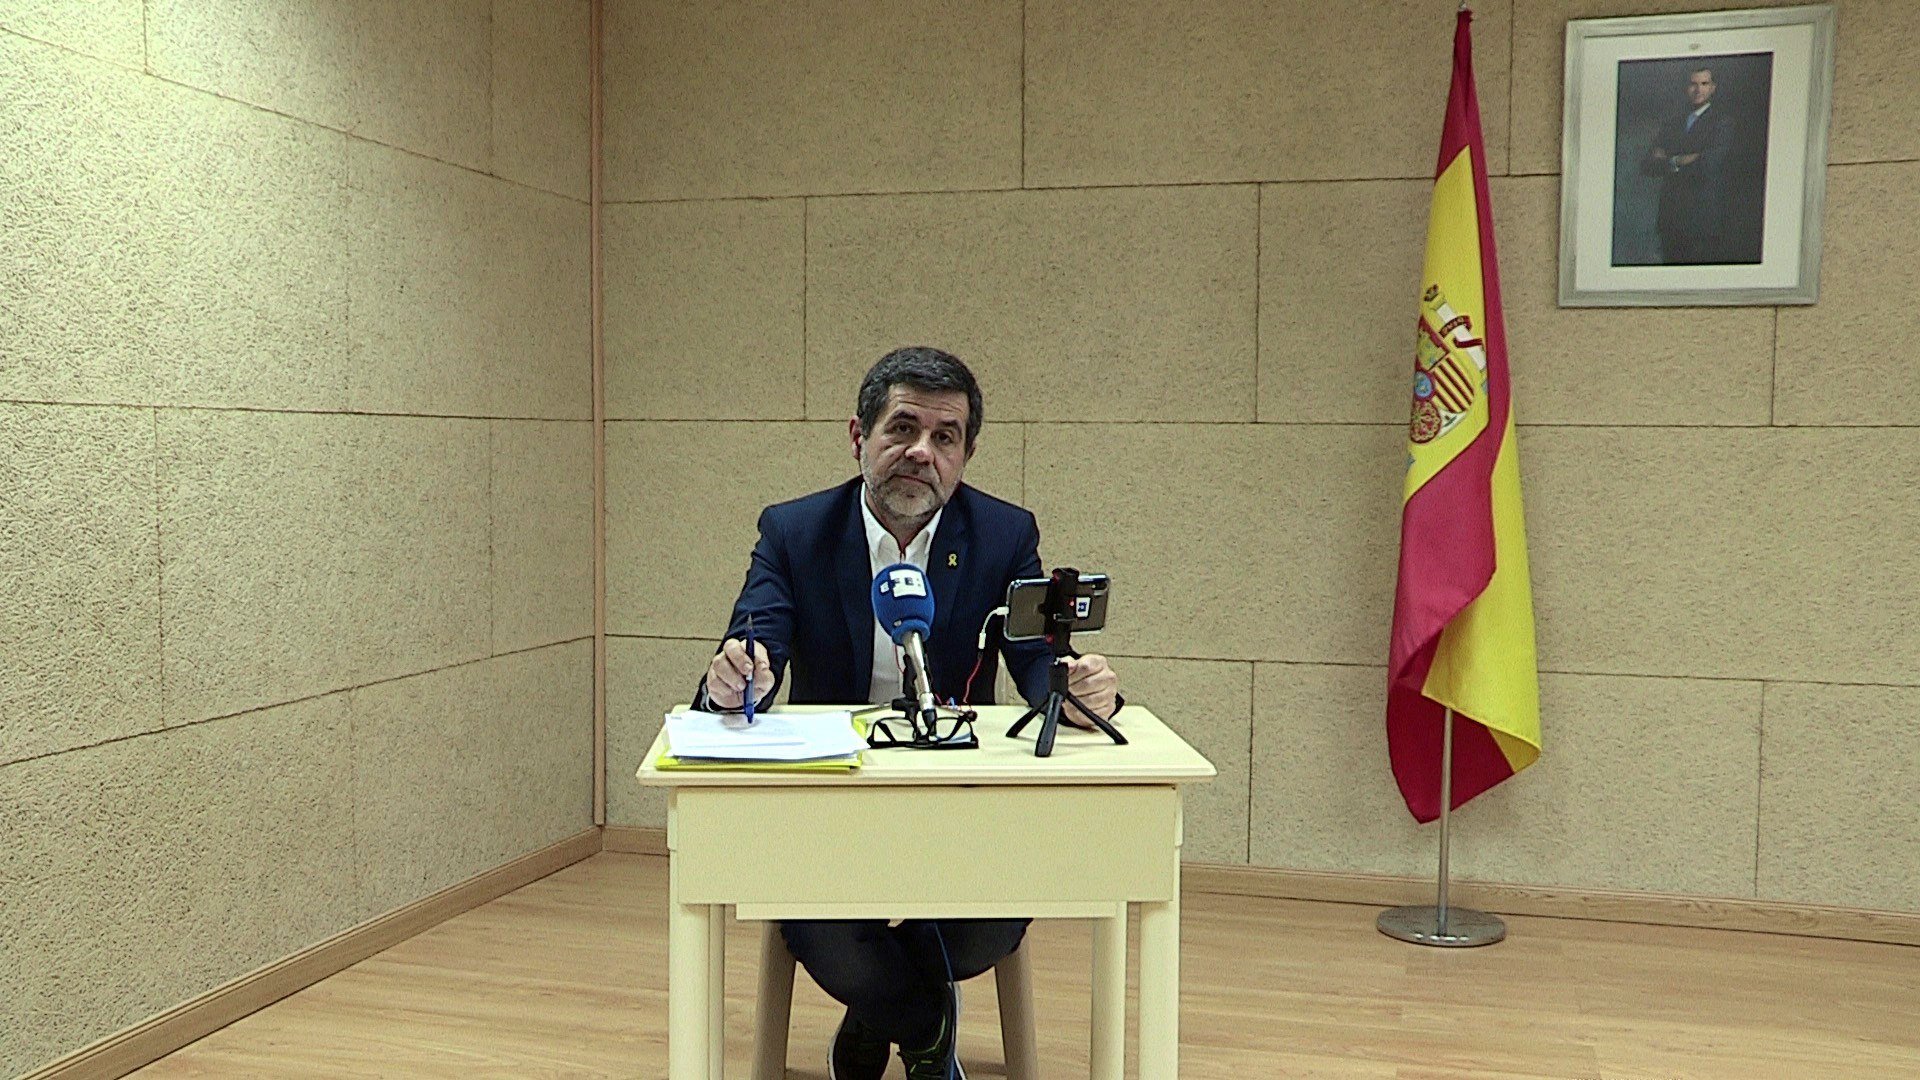 Jordi Sànchez's conciliatory tone in press conference from prison